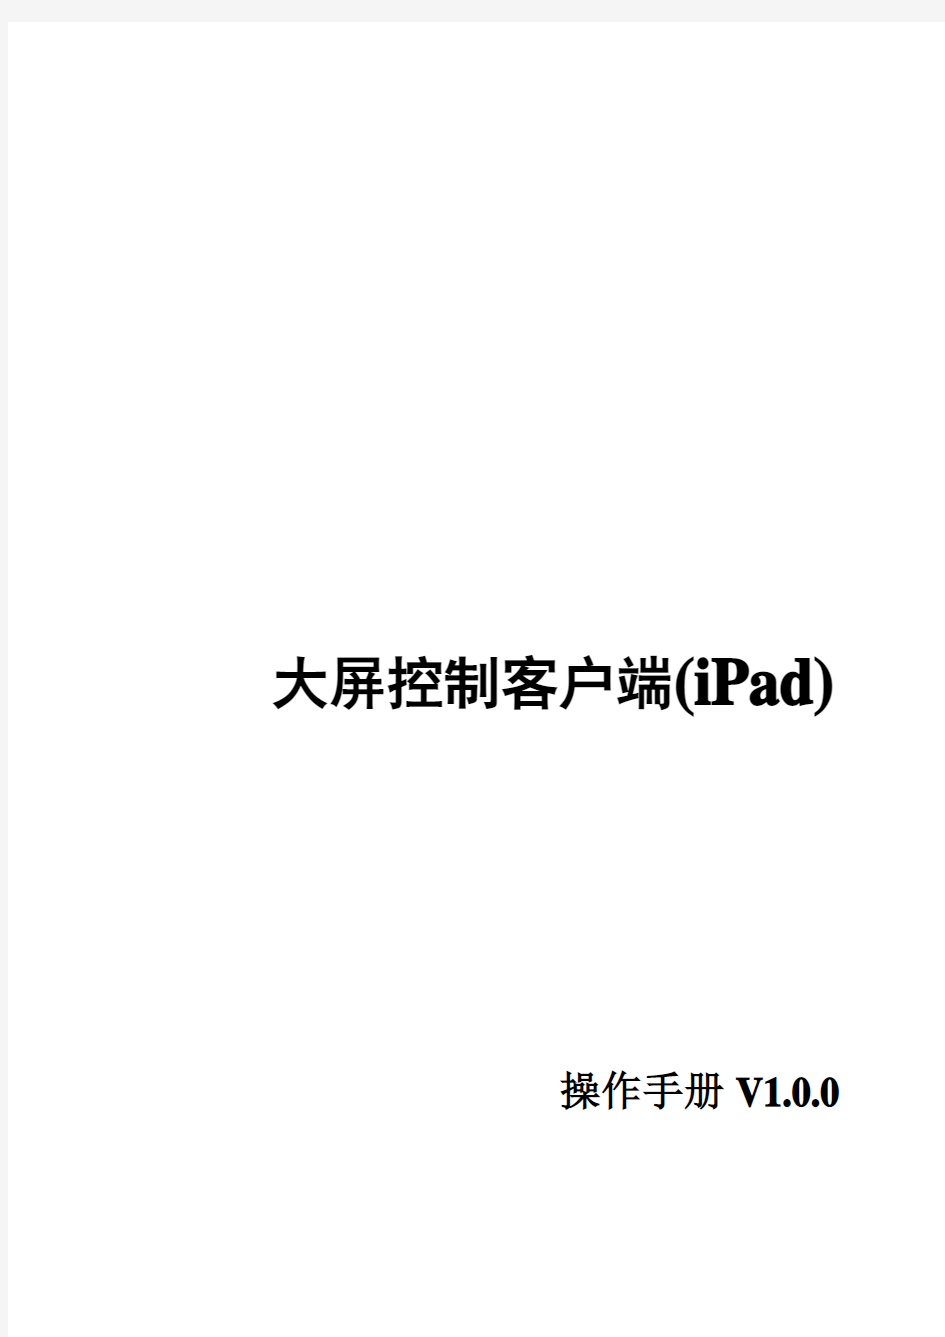 海康8700大屏控制客户端软件(iPad)操作手册